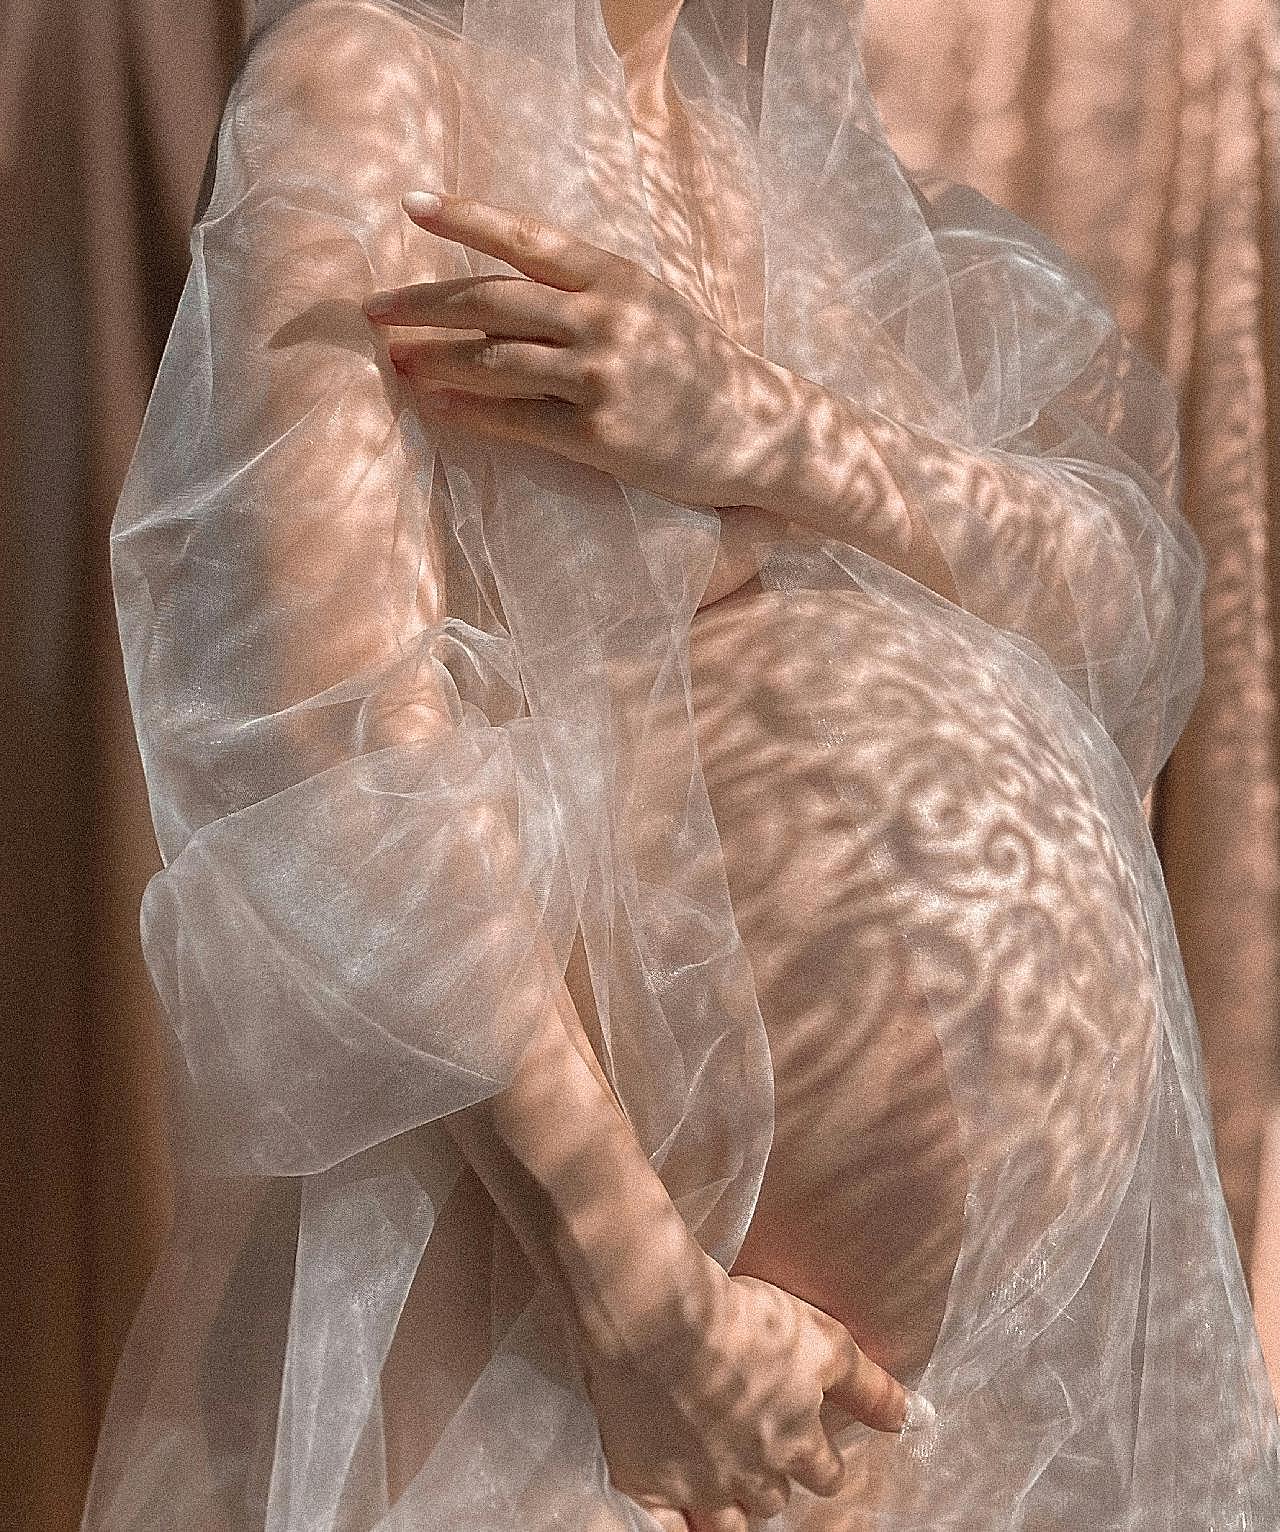 仙气朦胧孕妇照图片摄影人物